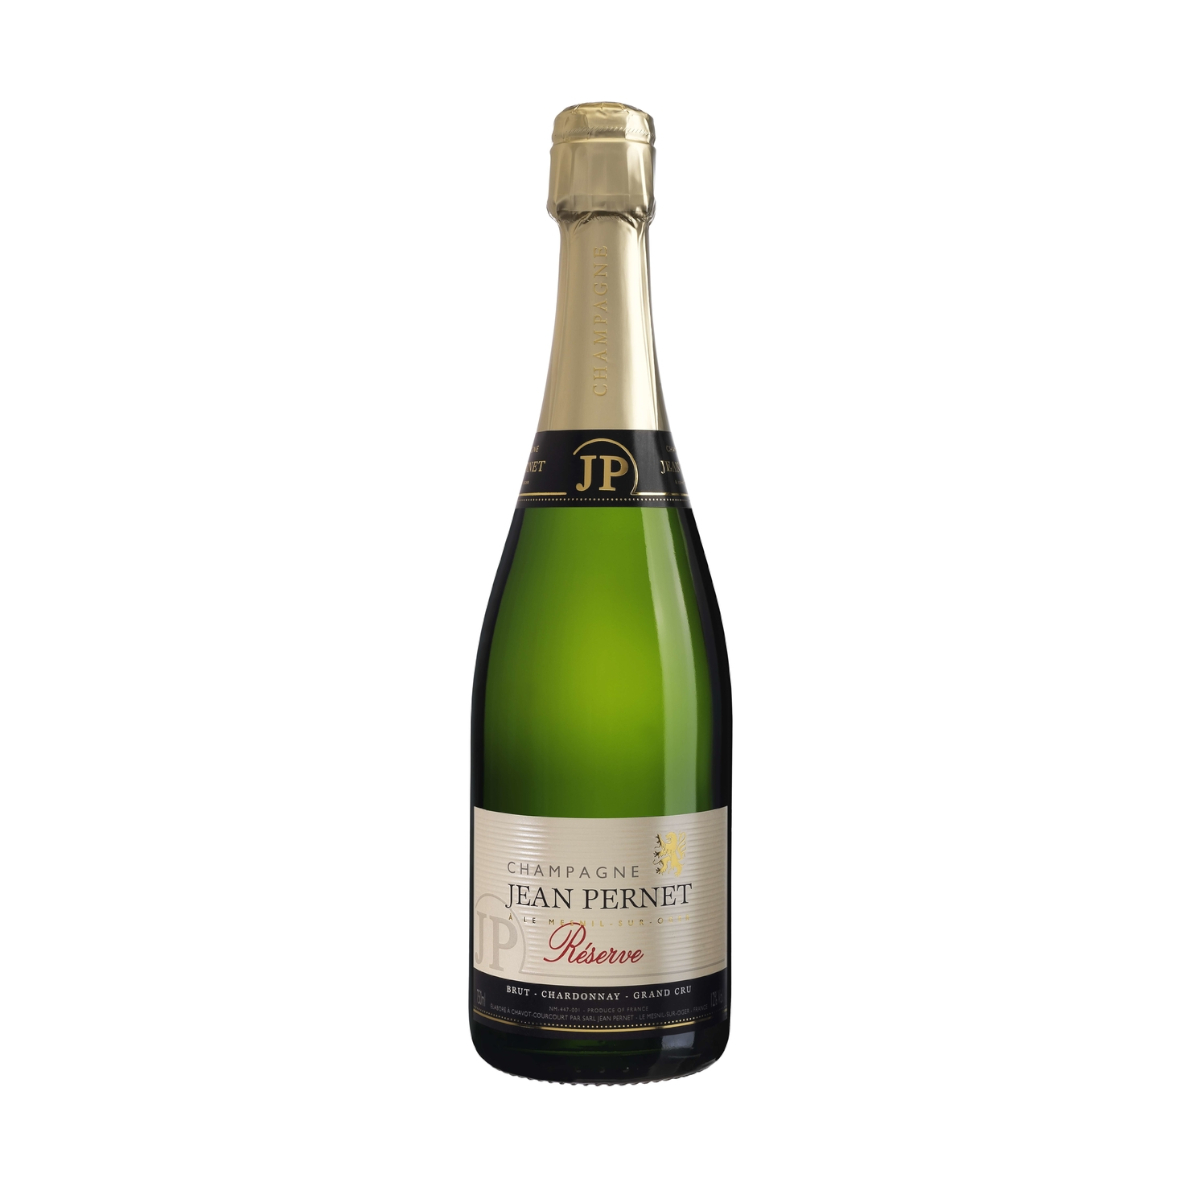 Jean Pernet, Grand Cru Chardonnay Reserve, Brut Champagne Jean Pernet (0,75 l)